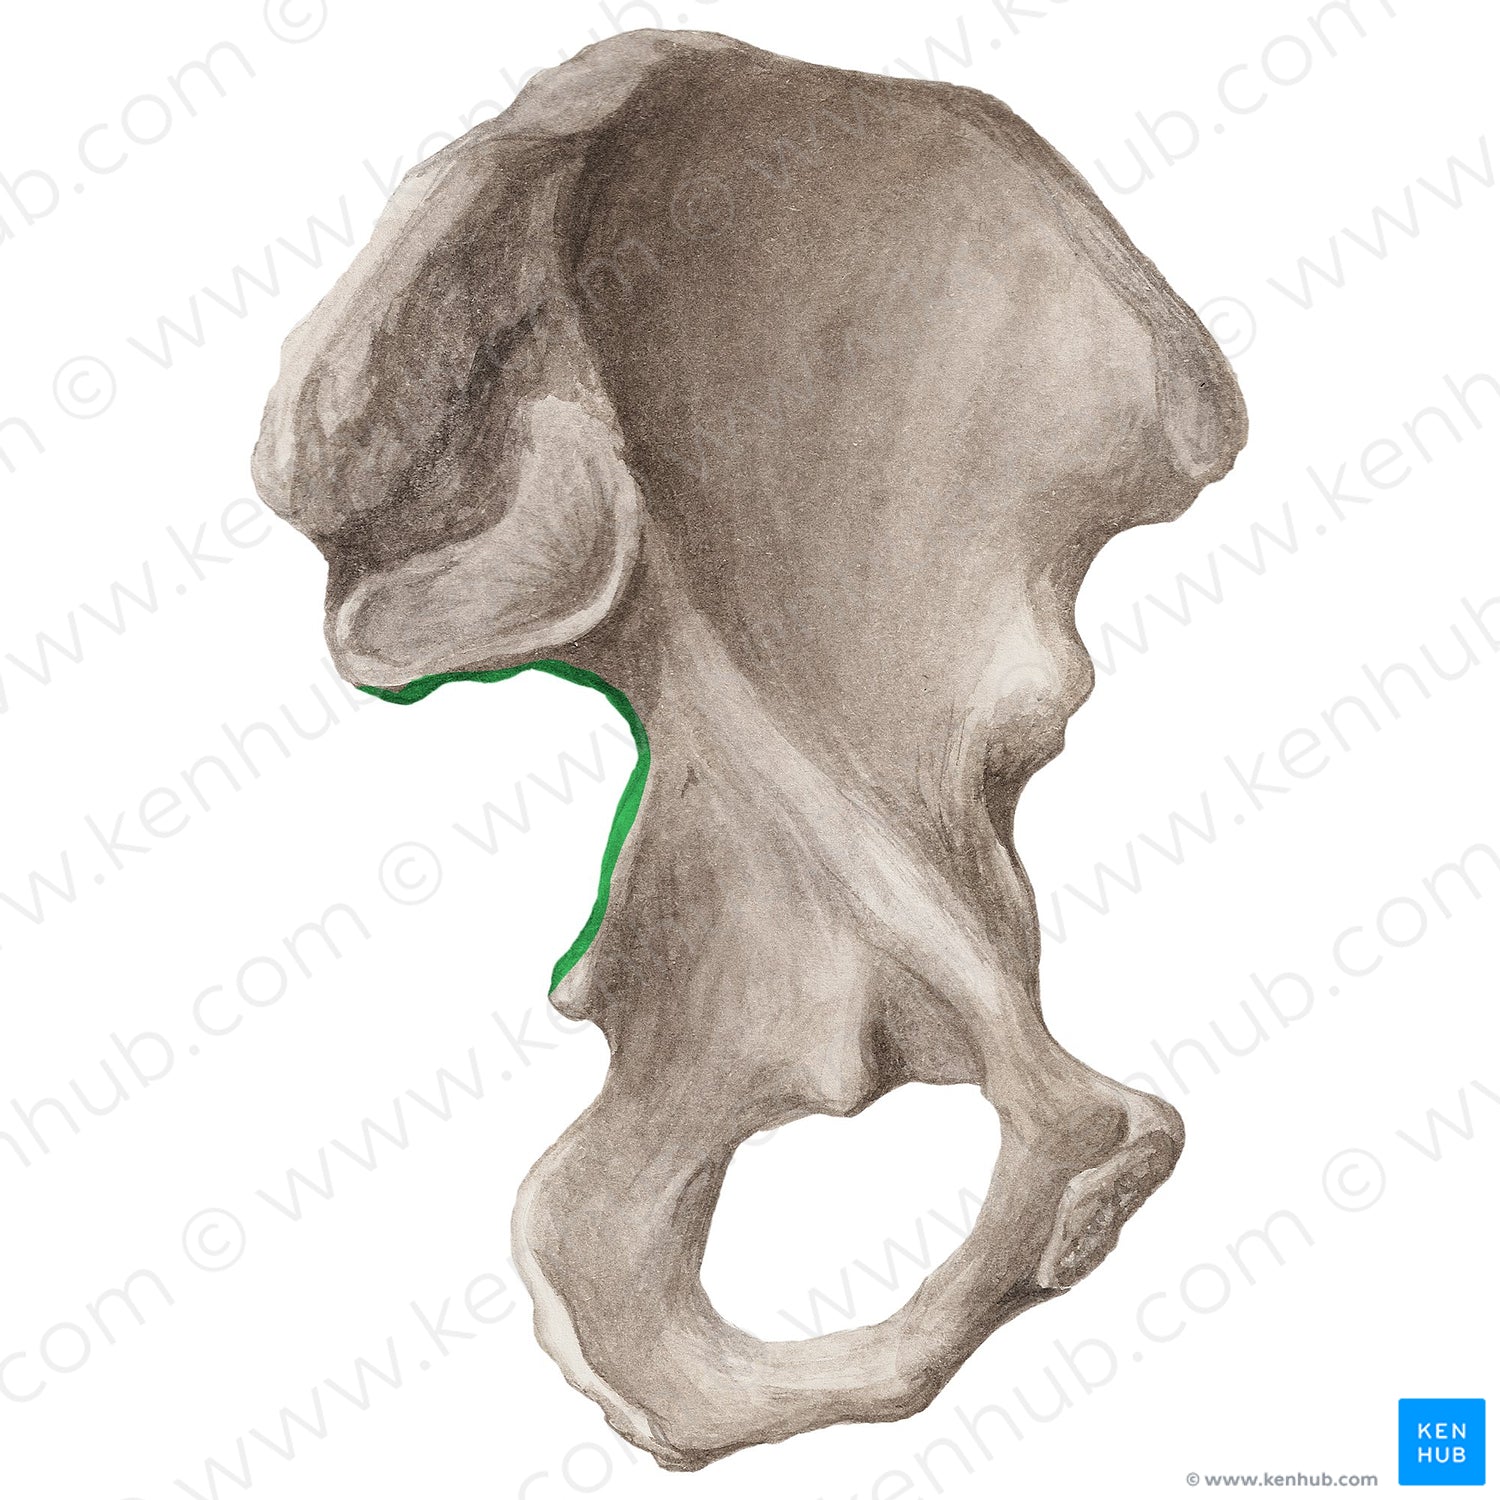 Greater sciatic notch of hip bone (#20299)